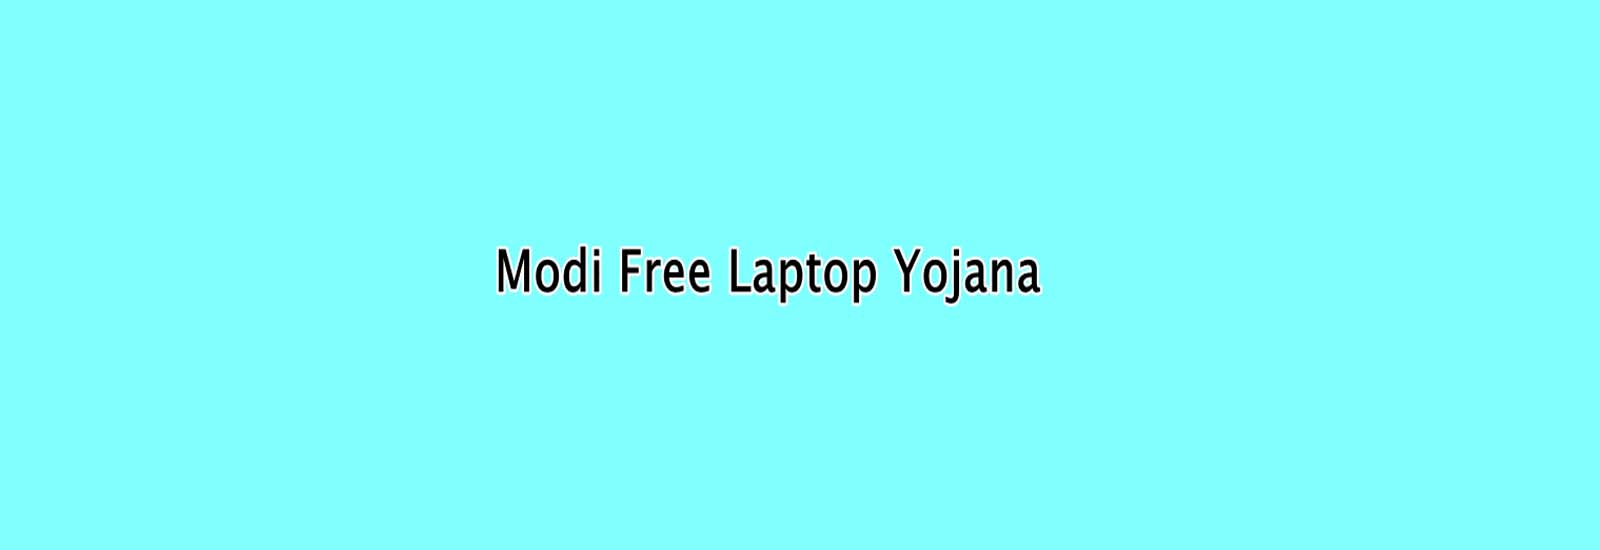 मोदी फ्री लैपटॉप योजना : Free Laptop Scheme, ऑनलाइन आवेदन